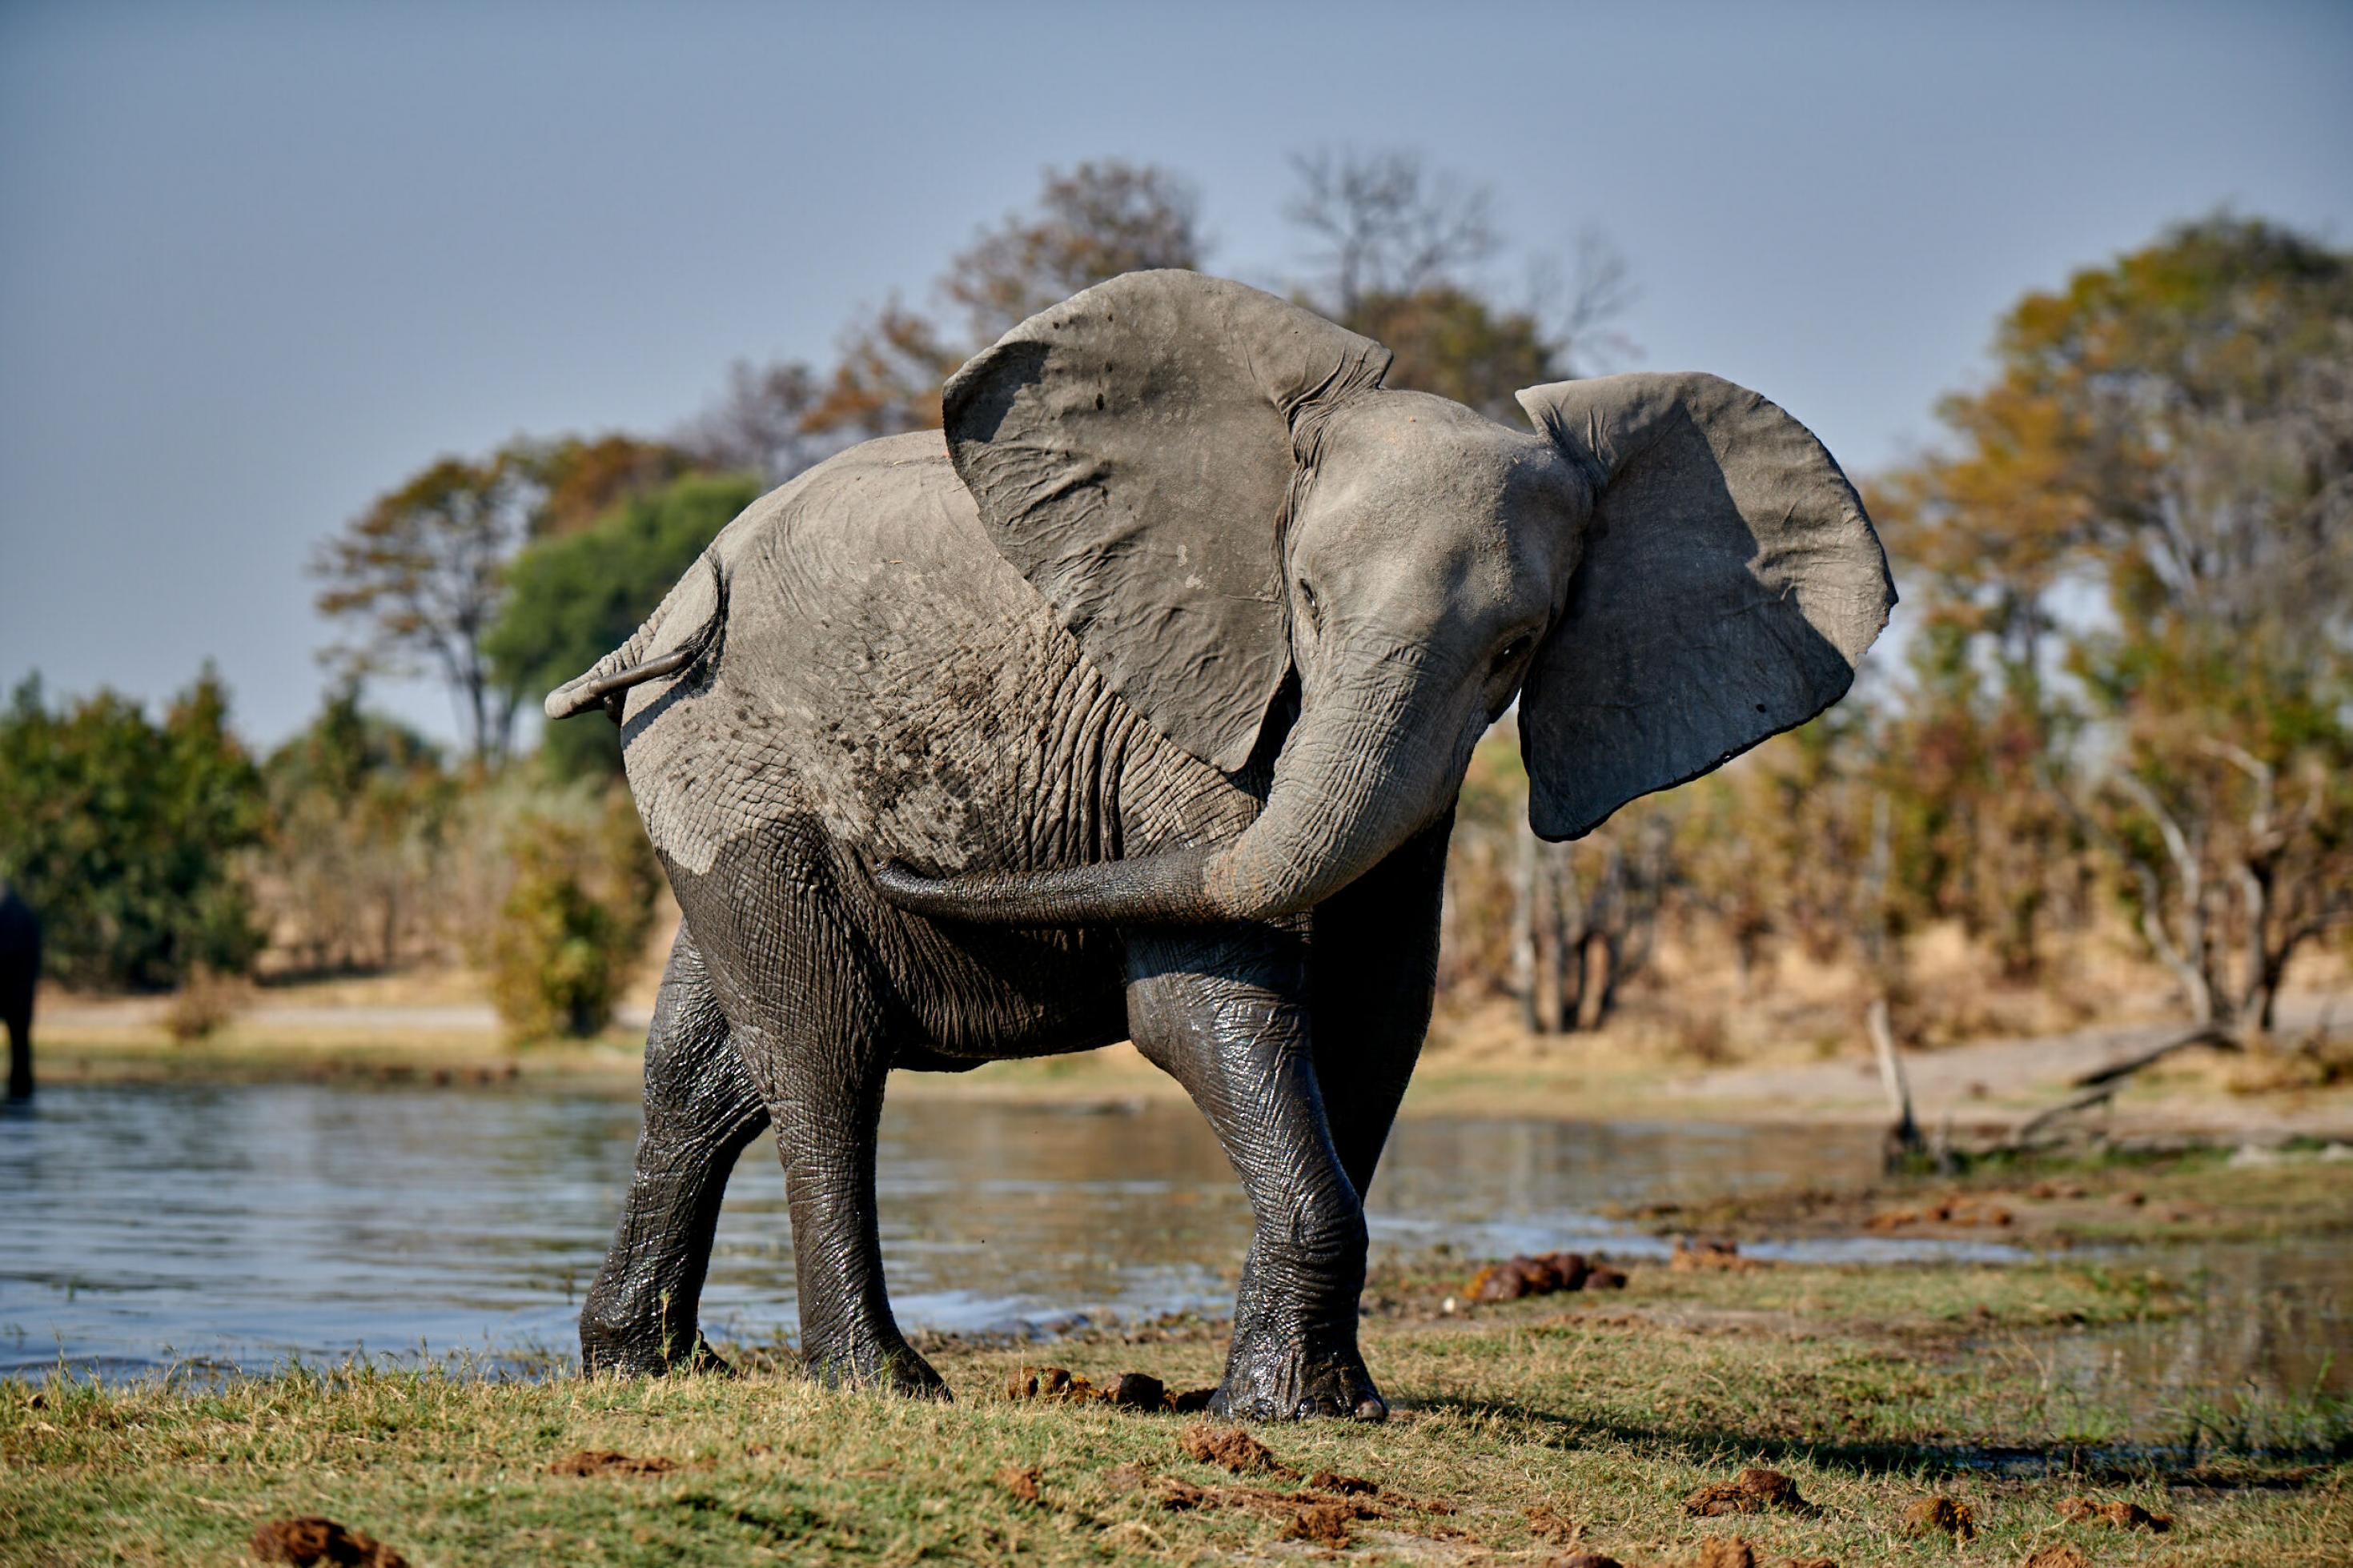 Der Elefant kommt gerade aus dem Wasser. Der untere Teil seines Körpers ist vom Wasser dunkler als der obere. Der Elefant schwenkt den Kopf zur Seite, die Ohren stehen ab, der Rüssel berührt die Flanke.